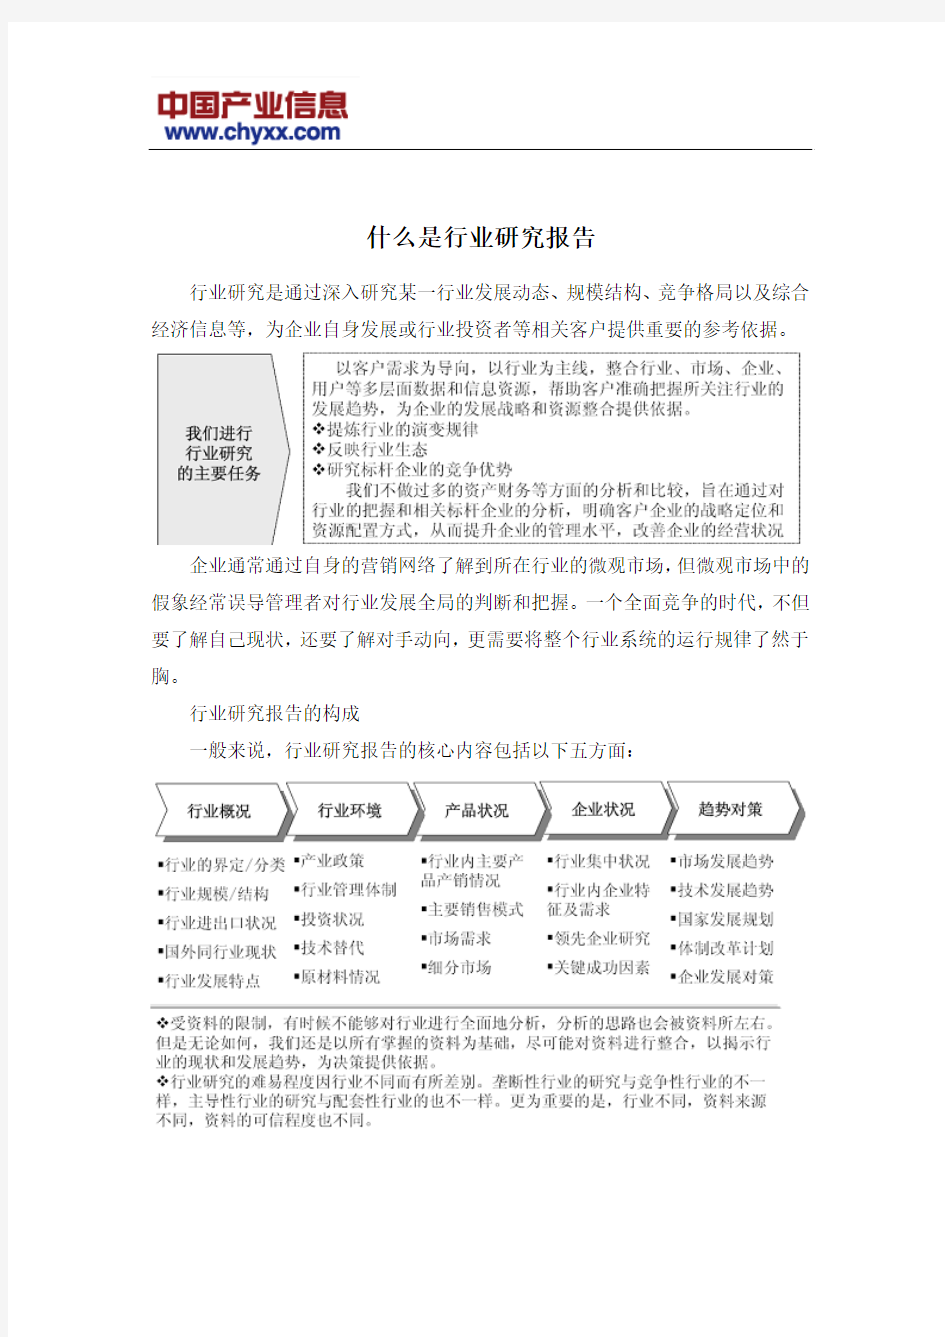 2015-2020年中国高精度音频信号发生器行业市场监测